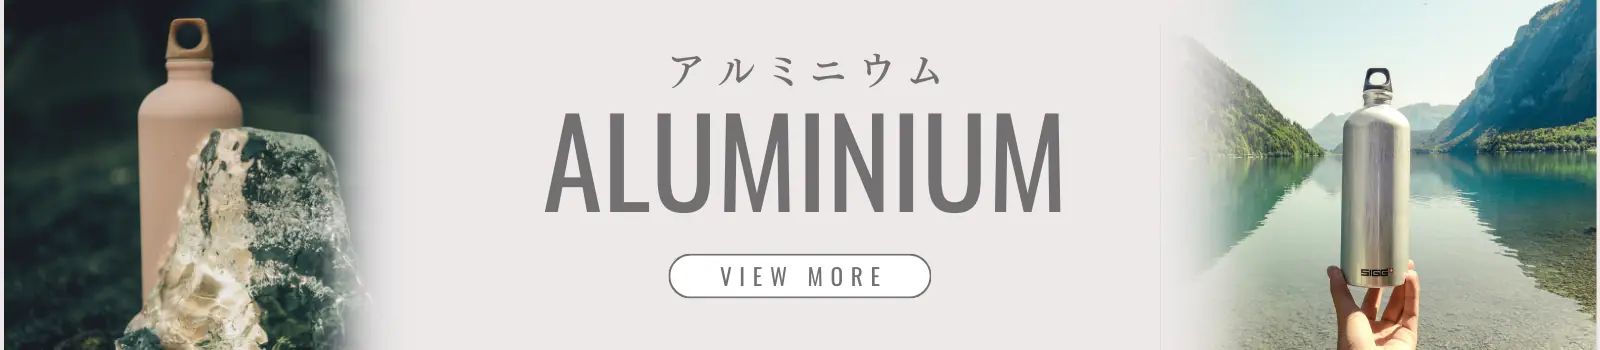 Aluminum アルミニウム 一覧を見る